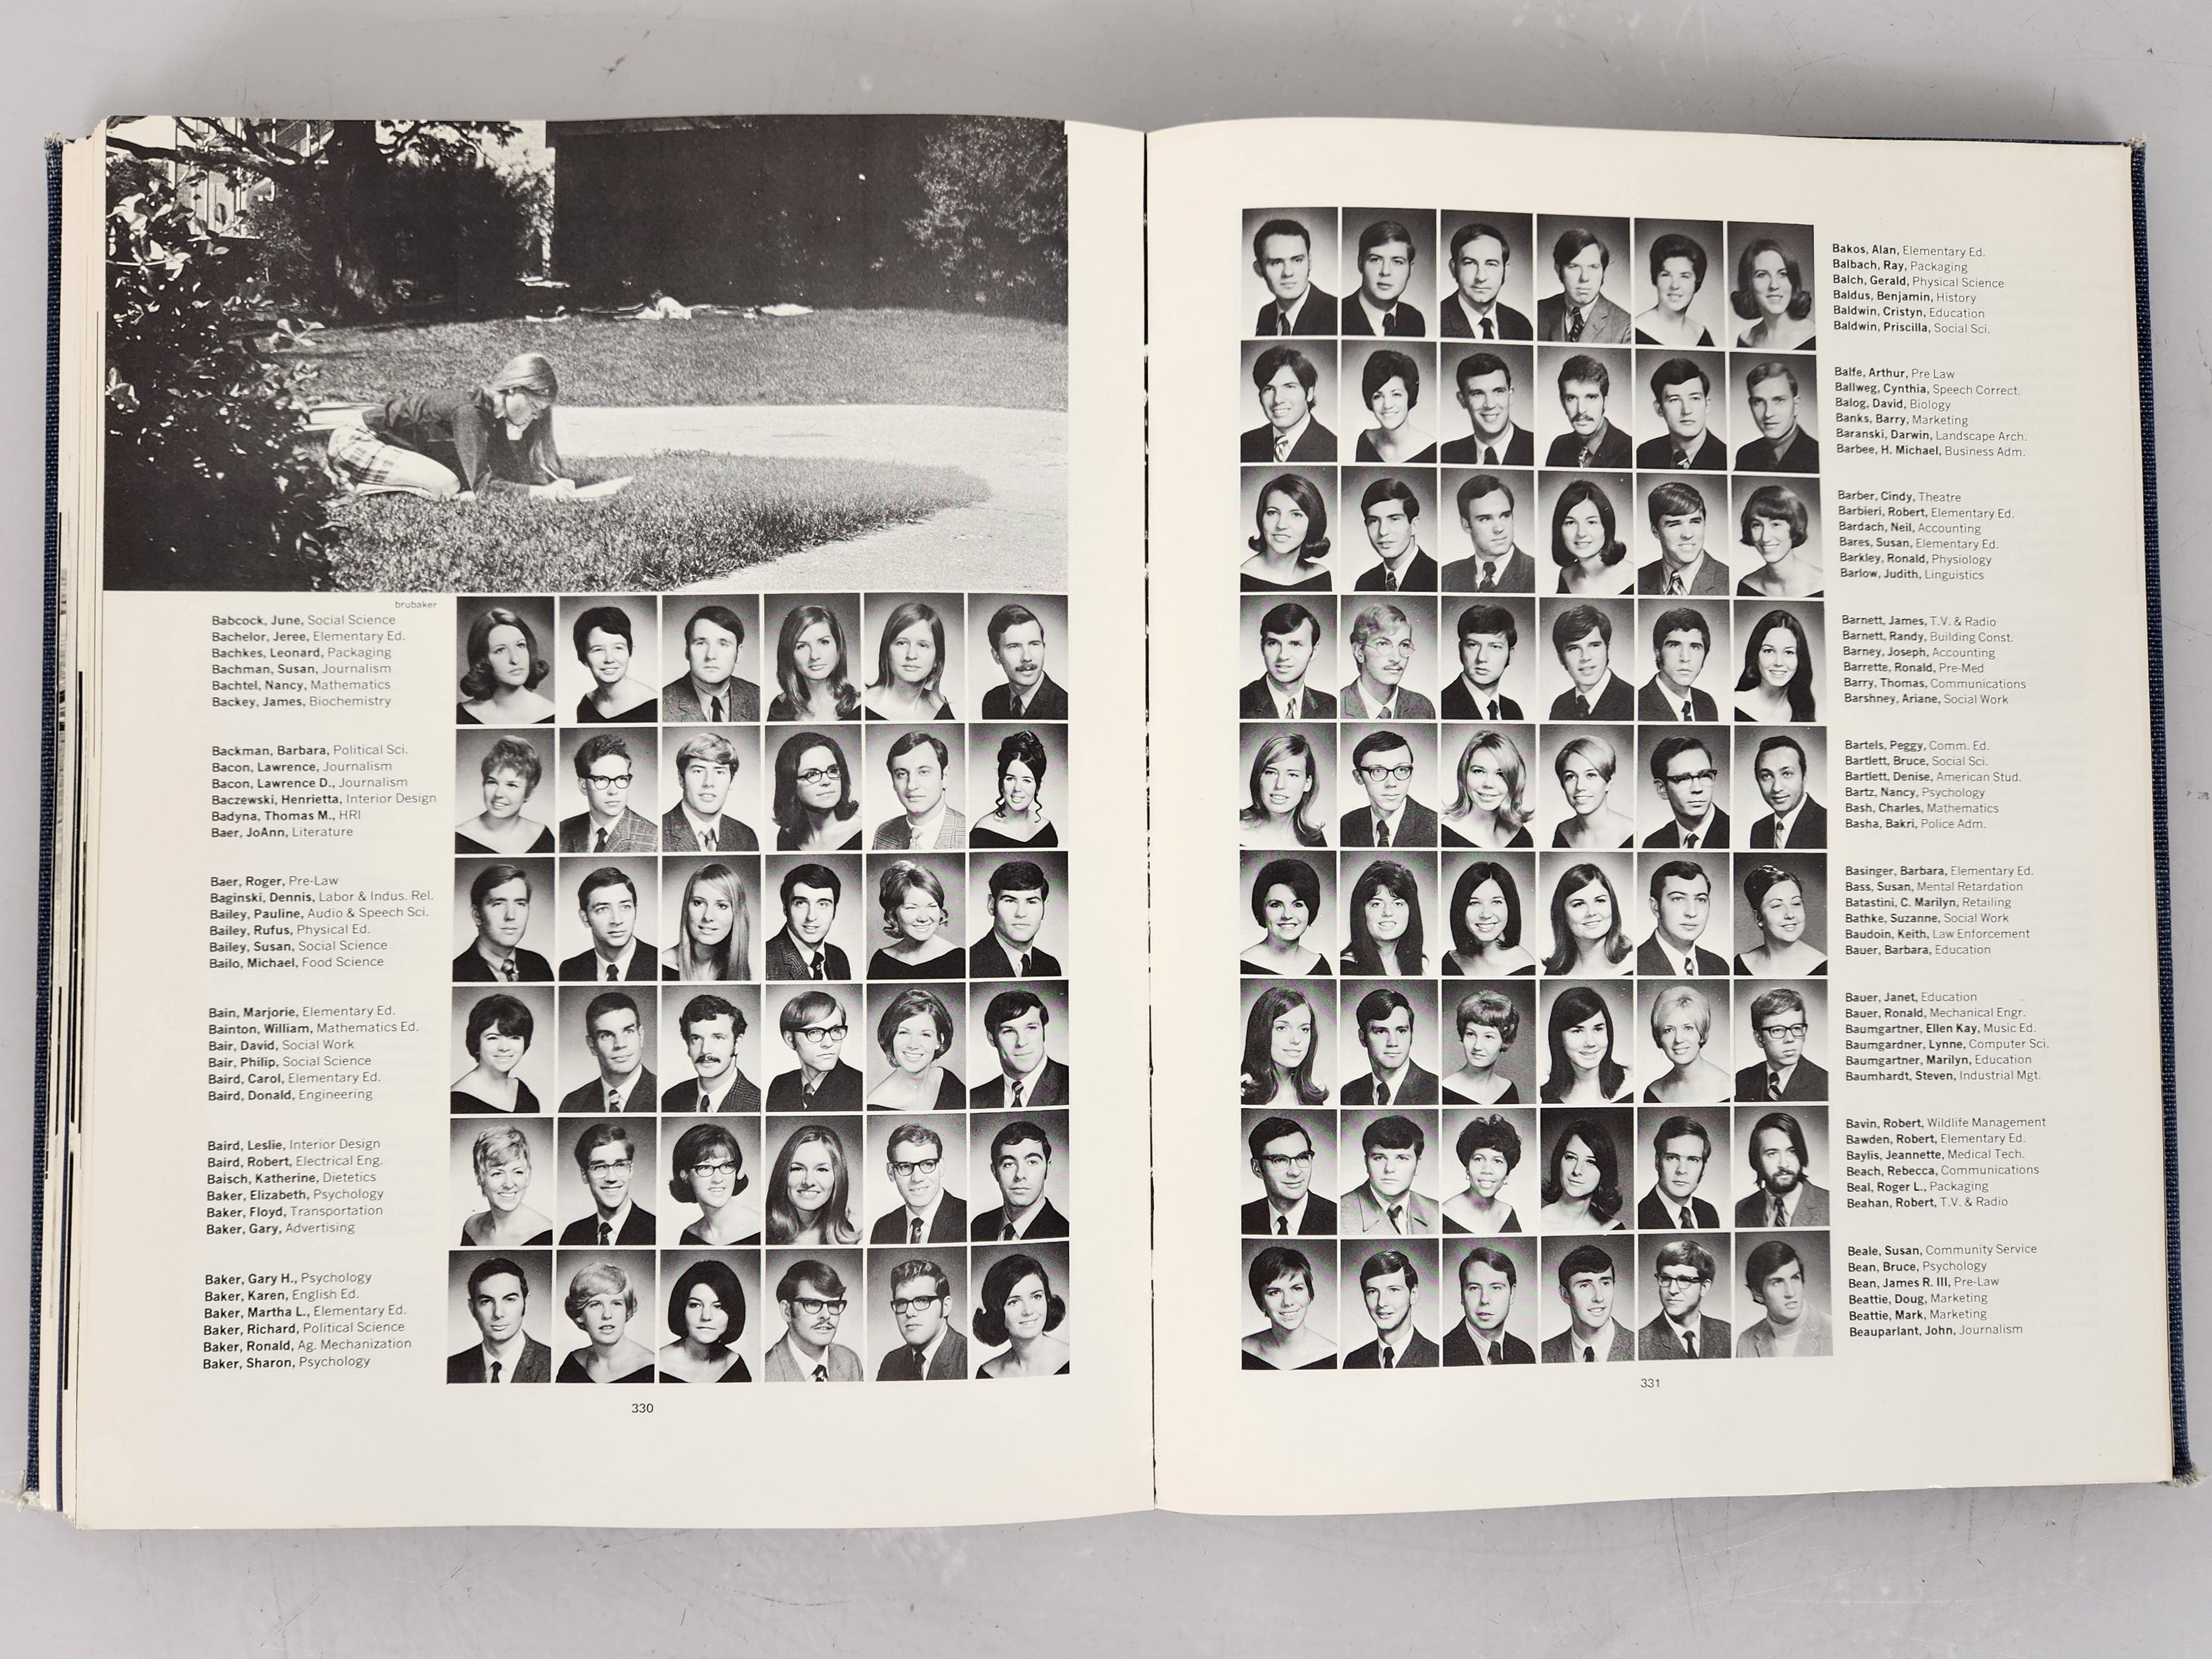 1970 Michigan State University Yearbook Wolverine